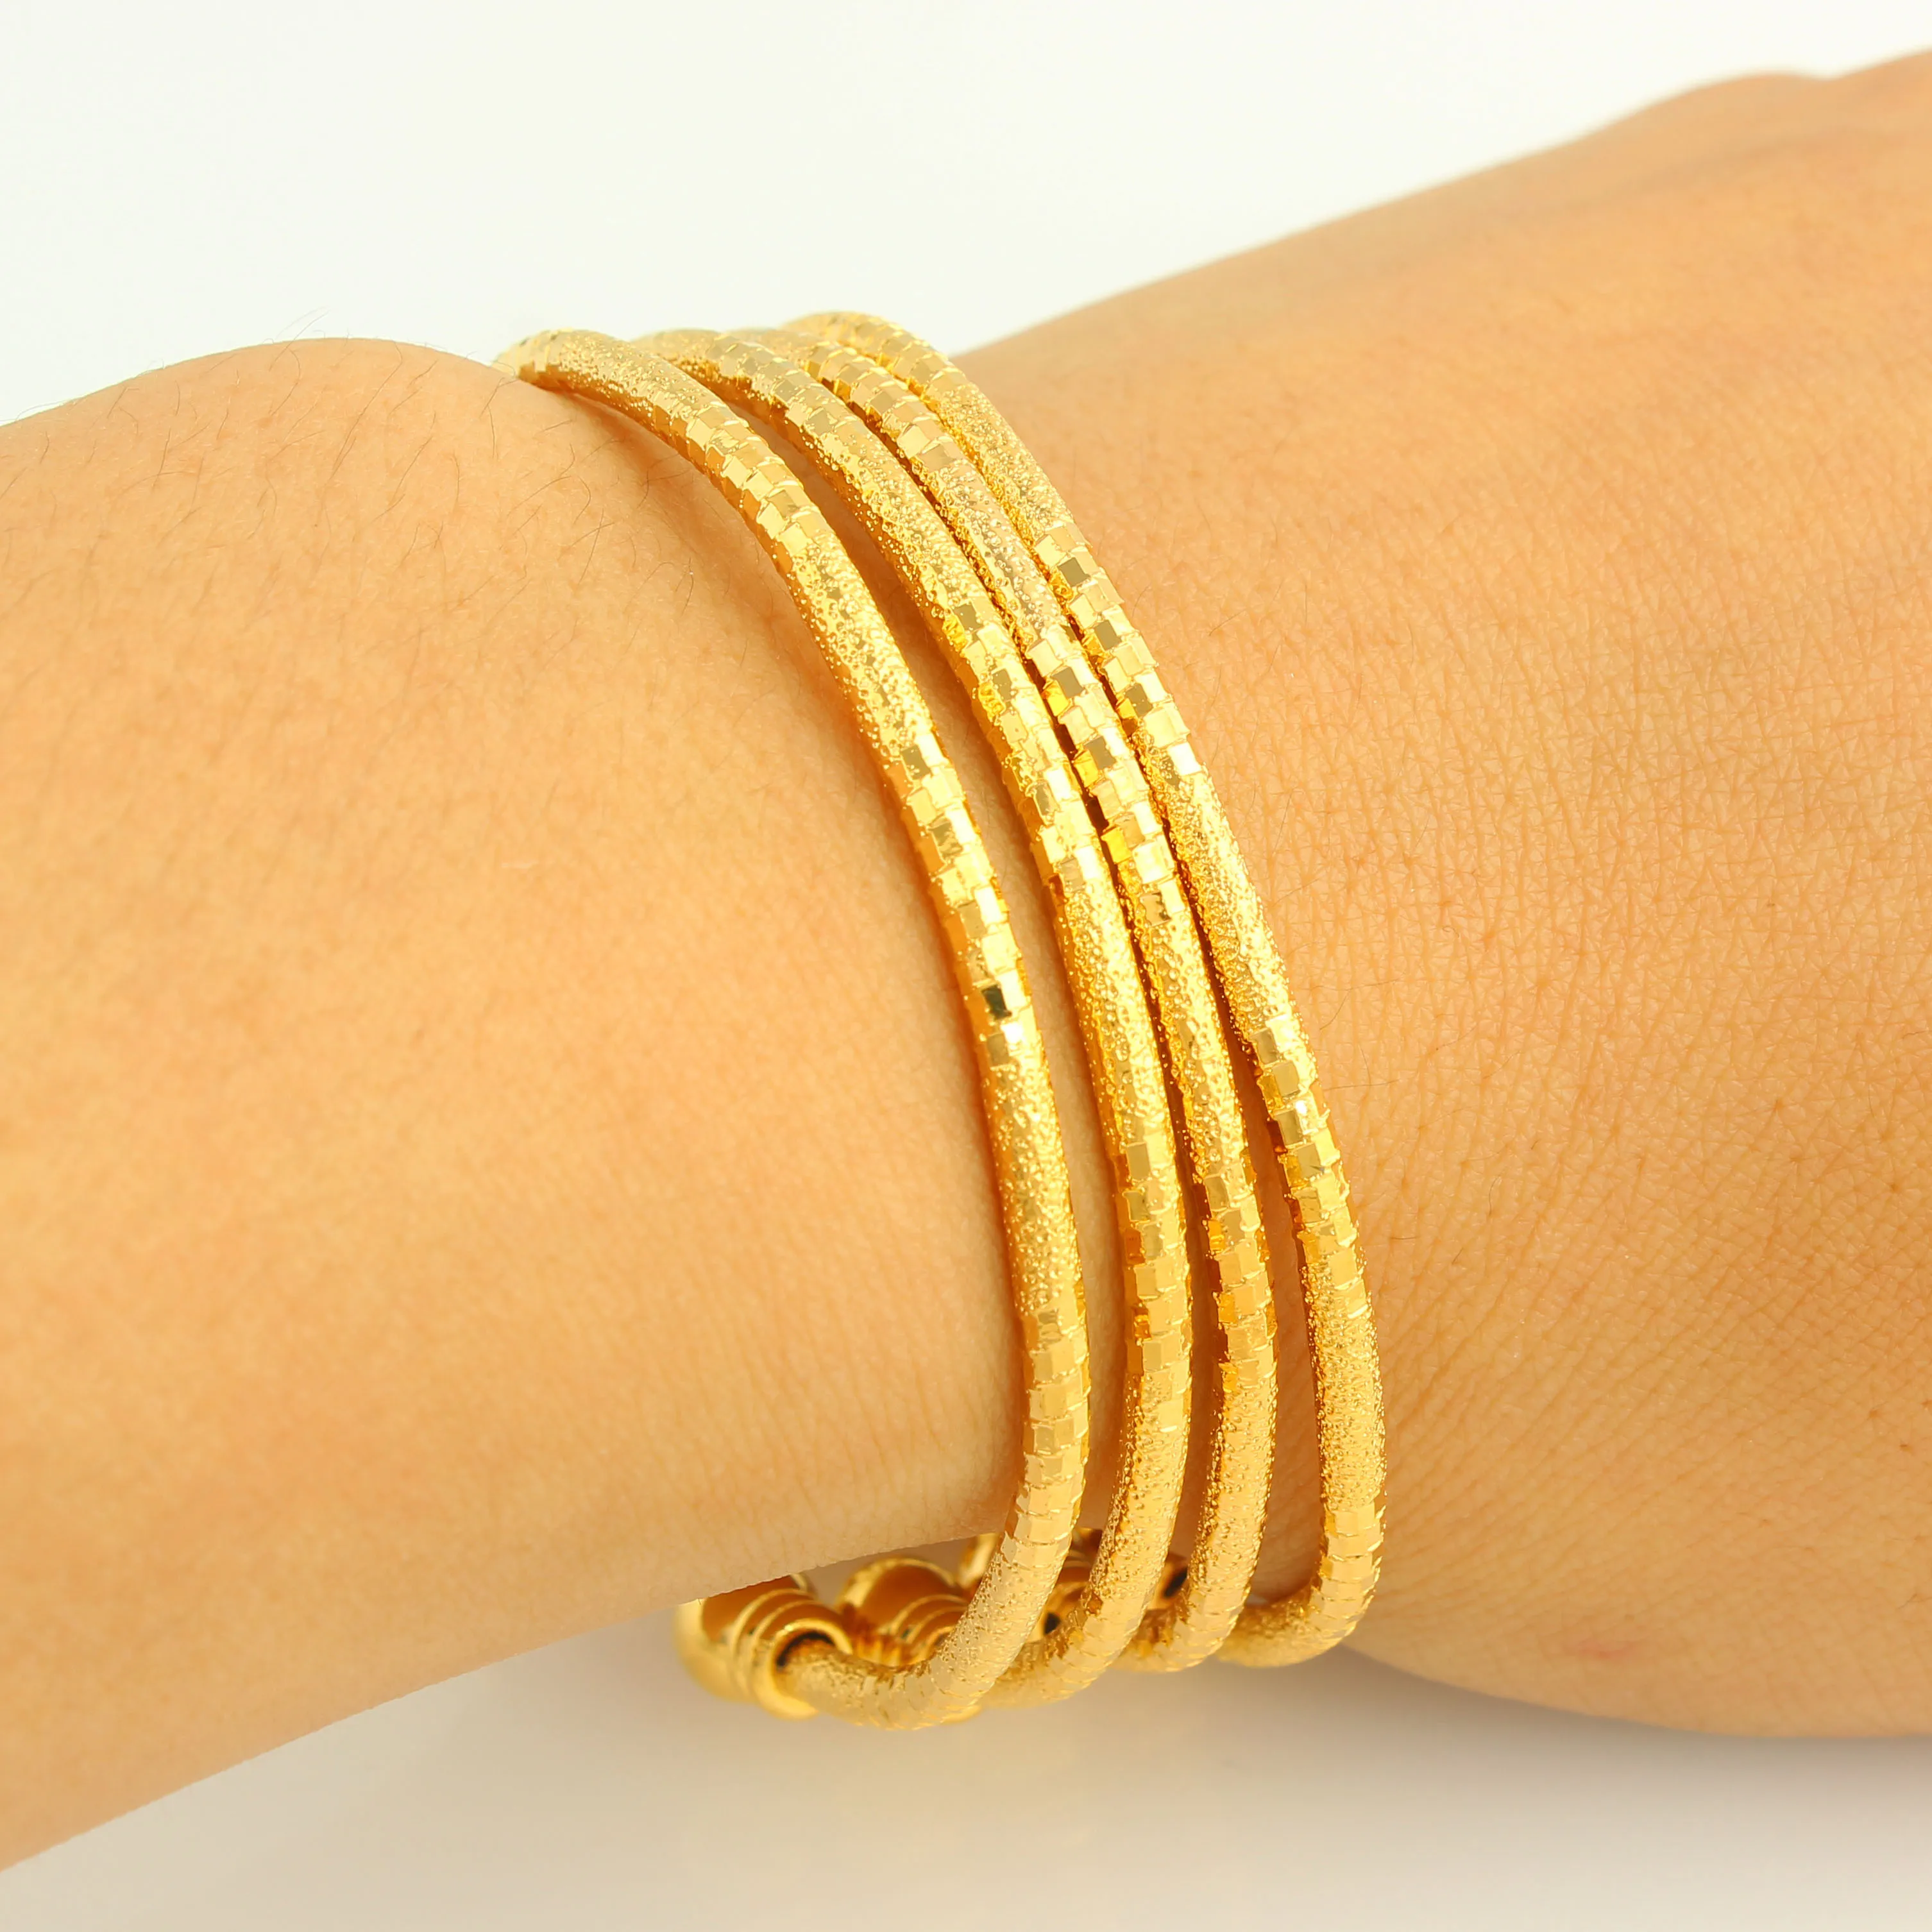 

Adixyn 4 шт./лот новые модные золотые браслеты Дубай для мужчин/женщин золотые браслеты эфиопские/африканские ювелирные изделия